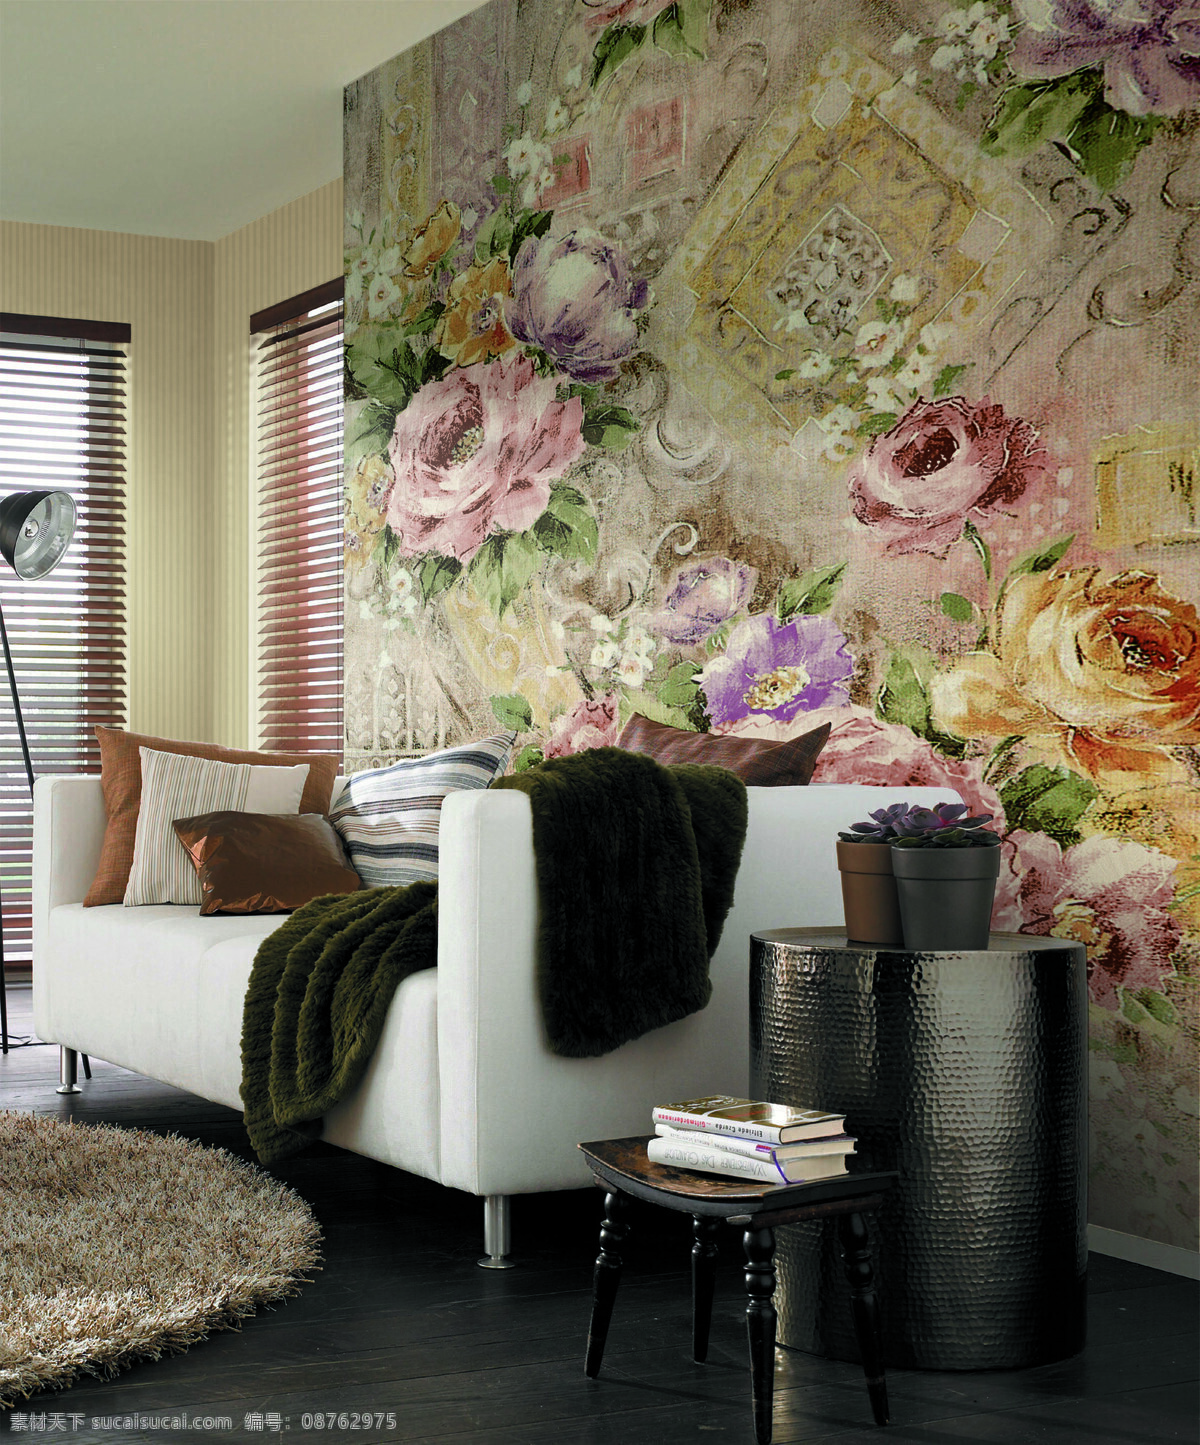 家居免费下载 壁纸 家居 家庭 建筑园林 欧式 沙发背景 室内摄影 壁纸图片 装饰 装饰素材